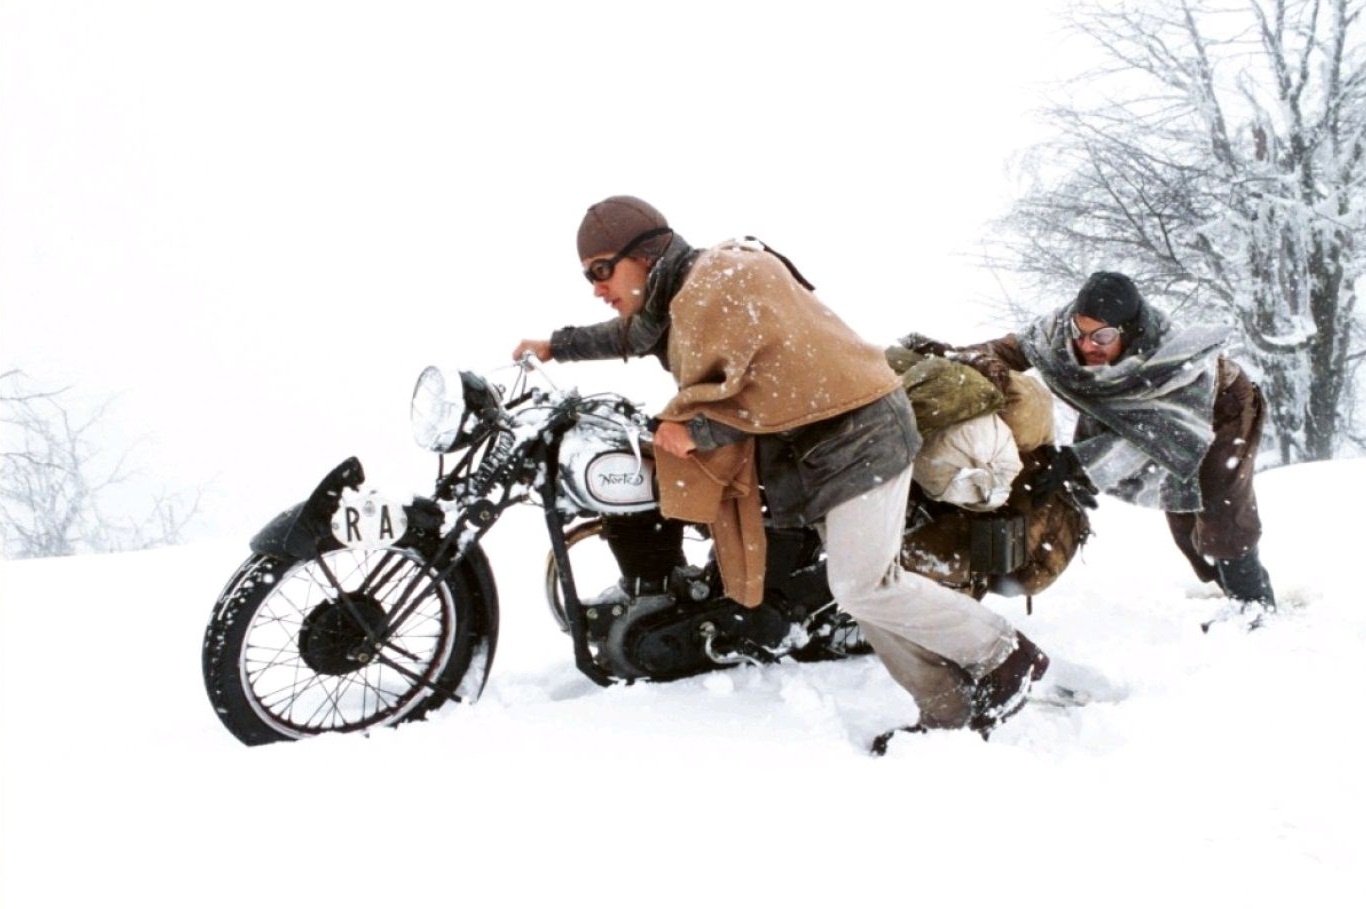 Че Гевара: дневники мотоциклиста / Diários de Motocicleta / The Motorcycle Diaries / Diarios de motocicleta (2004): кадр из фильма